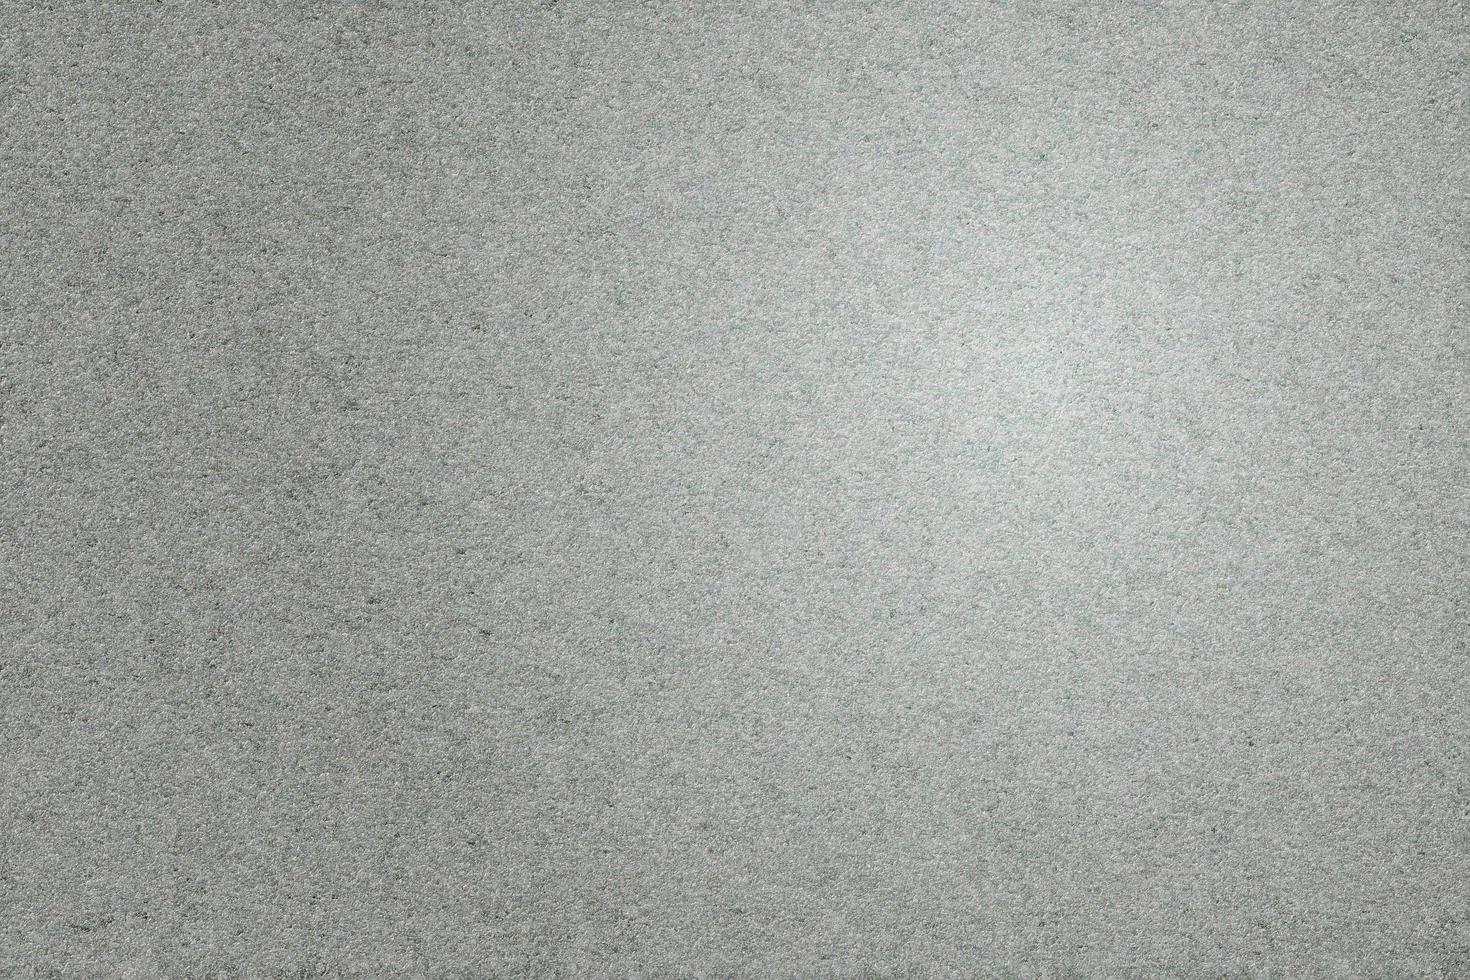 textur av smuts på grå sand tvätt, abstrakt bakgrund foto